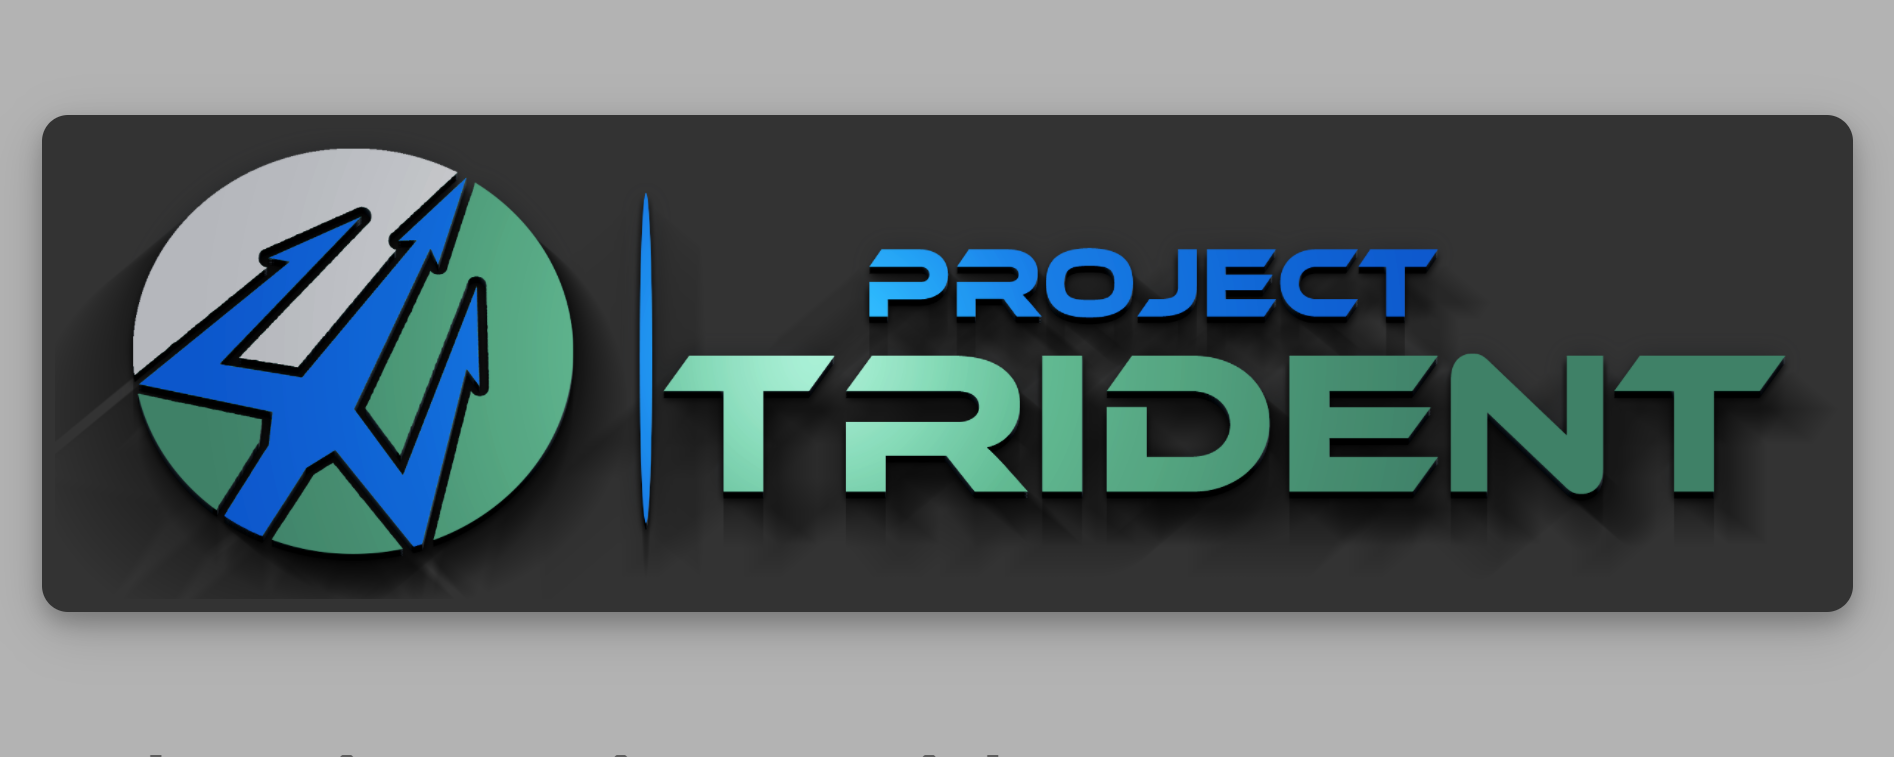 Projeto Trident é descontinuado depois de mudar base do FreeBSD para Void Linux e desenvolver desktop Lumina